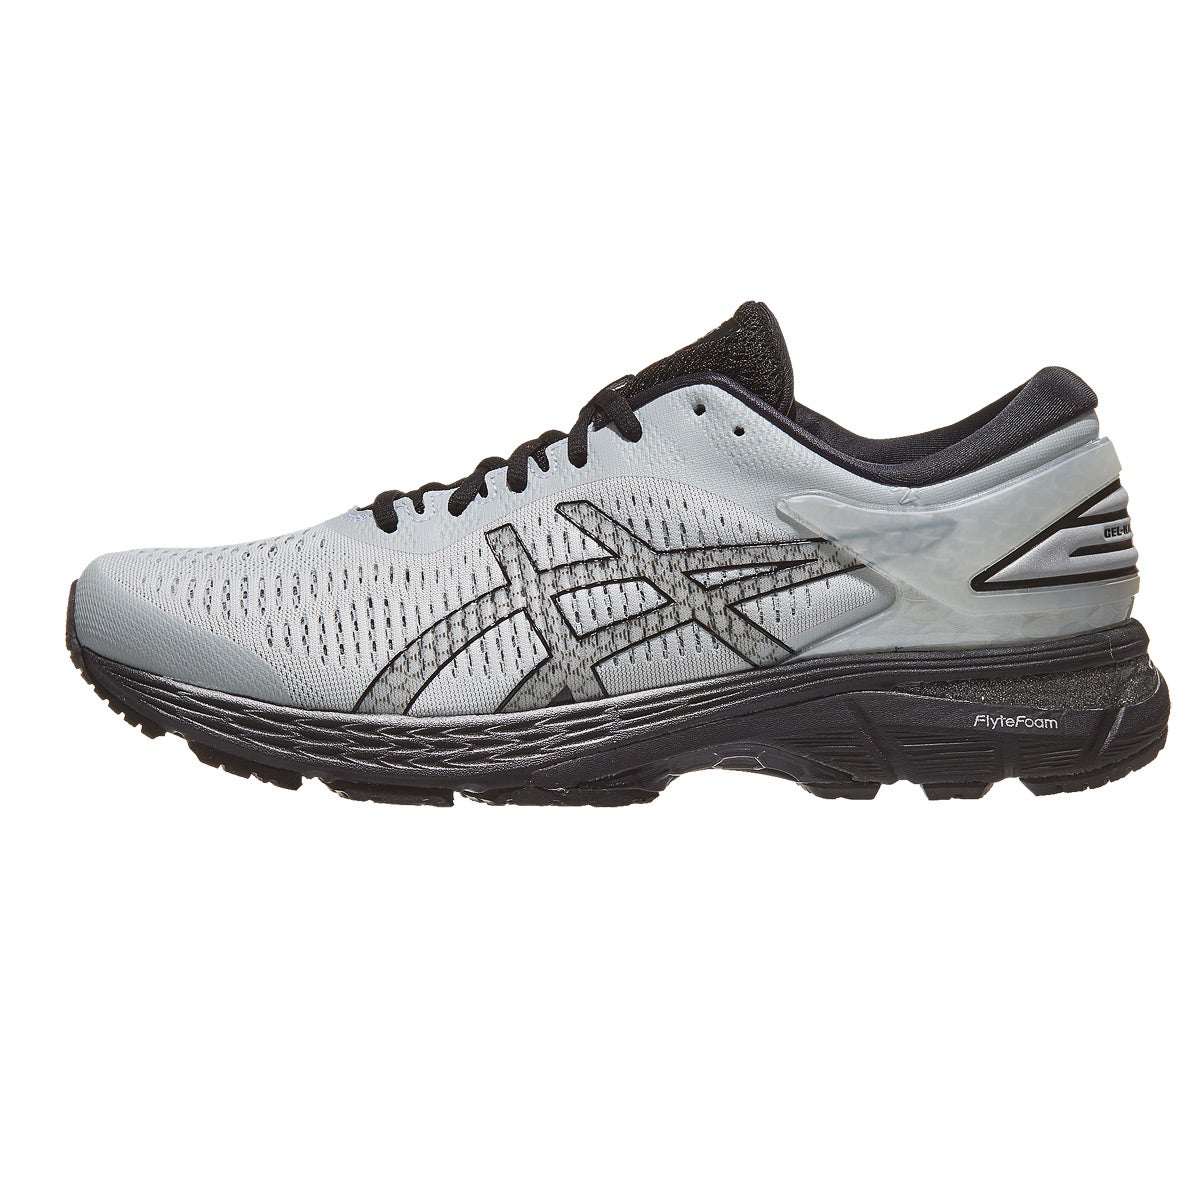 ASICS Gel Kayano 25 Men's Shoes Glacier Grey/Black 360° View | Running ...